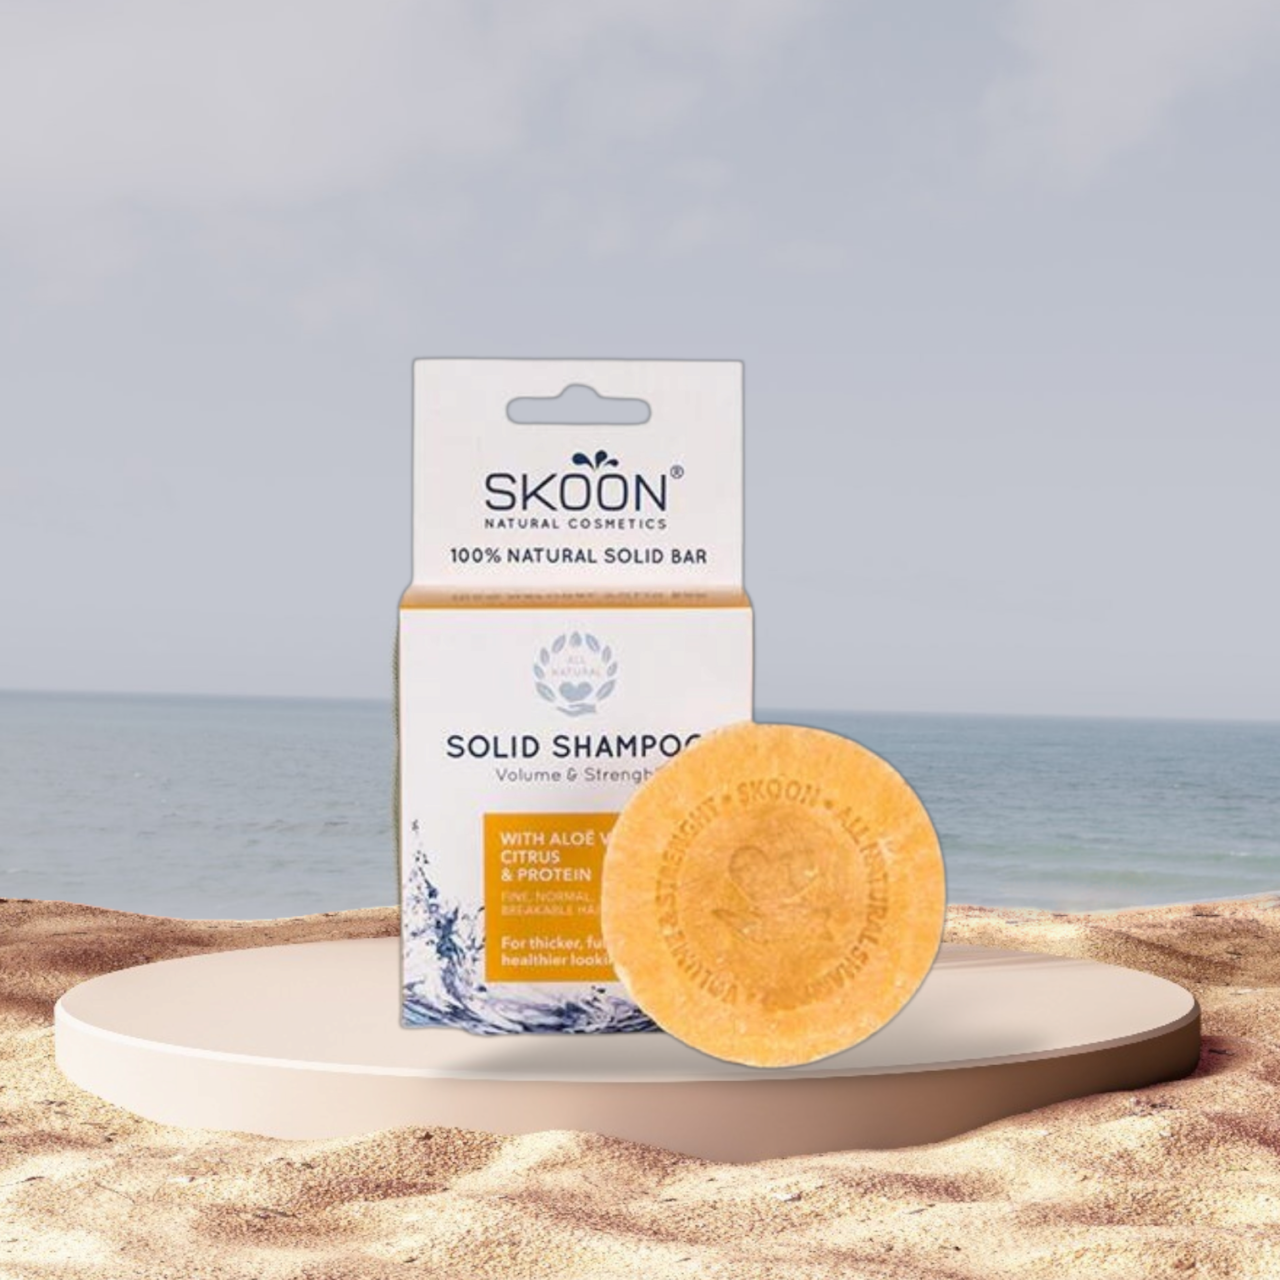 Naturlig Skoon shampoo bar - Volume & Strength VINDER NYHED 2022 på stranden.